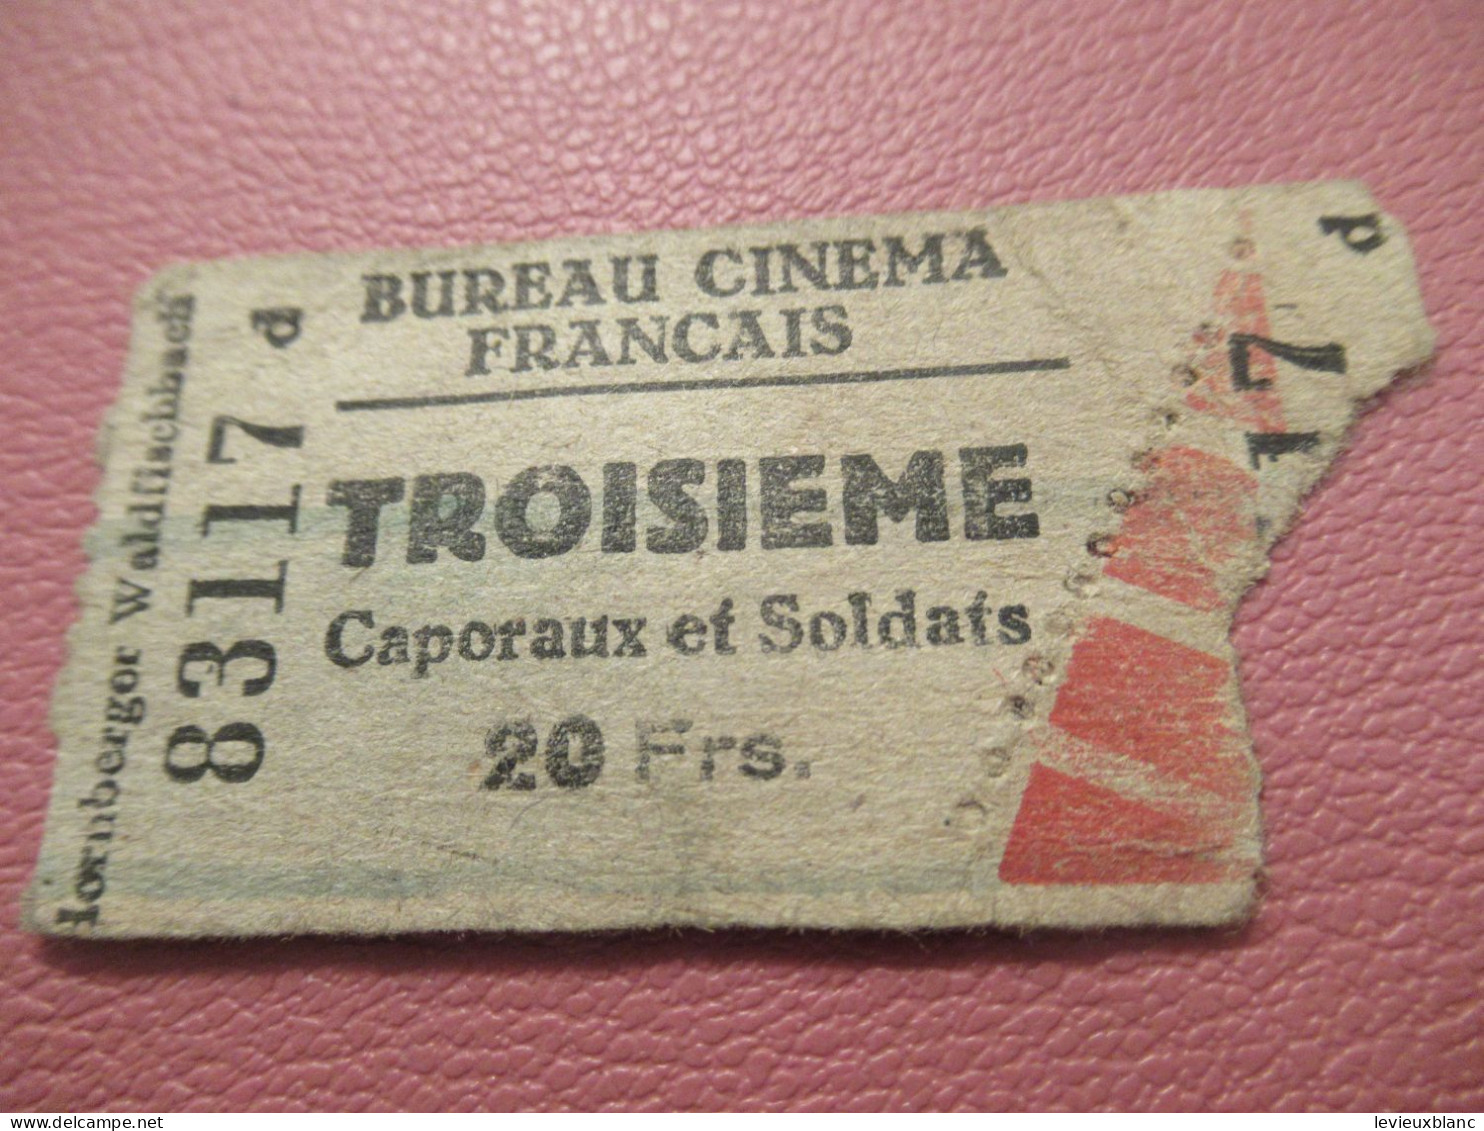 France / BUREAU CINEMA FRANCAIS/Troisième/ Caporaux Et Soldats /Lornberger Waldfischbach /1939-1945     TCK277 - Biglietti D'ingresso